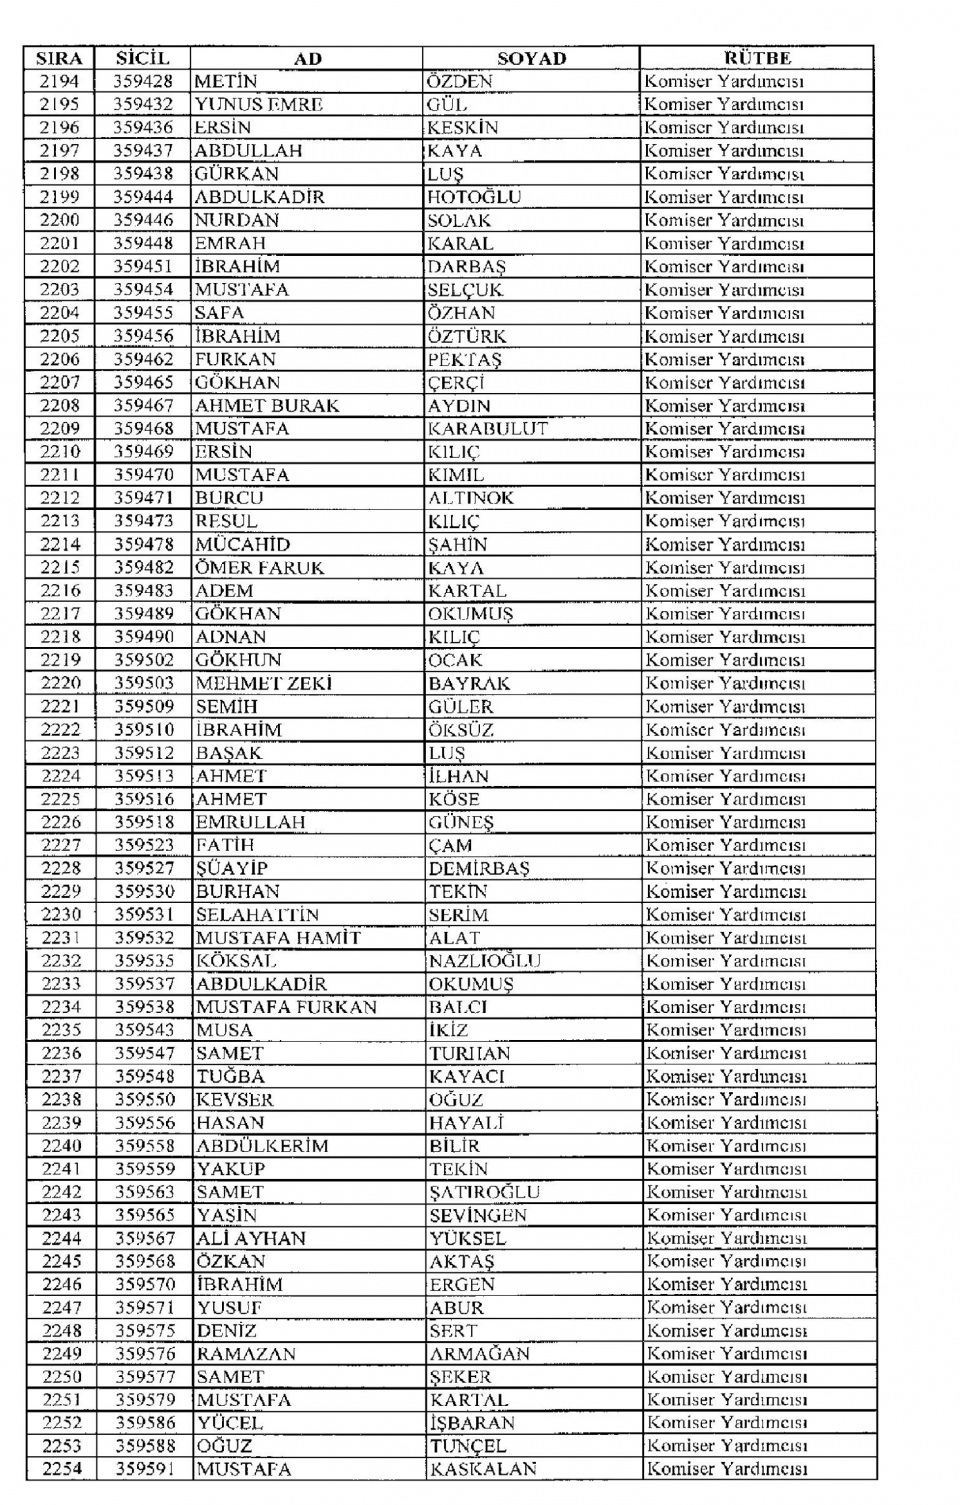 Kamudan ihraç edilenlerin isim isim listesi 89